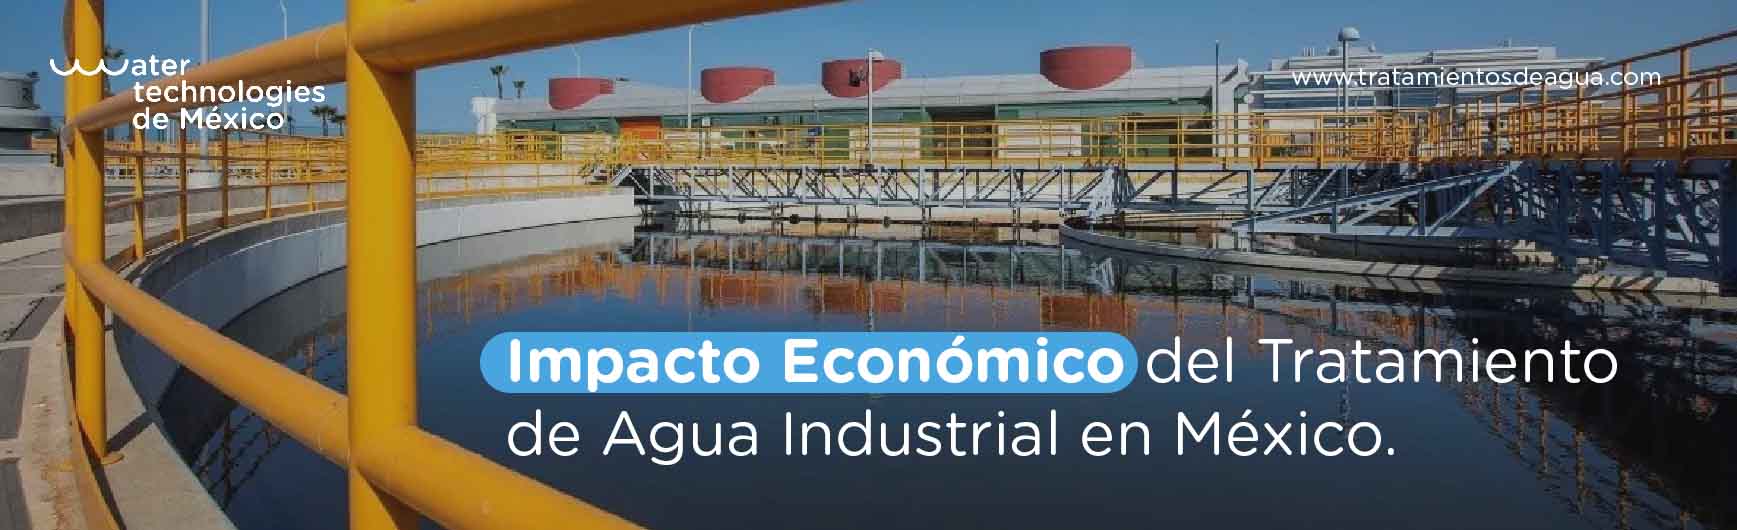 Impacto Económico del Tratamiento de Agua Industrial en México.